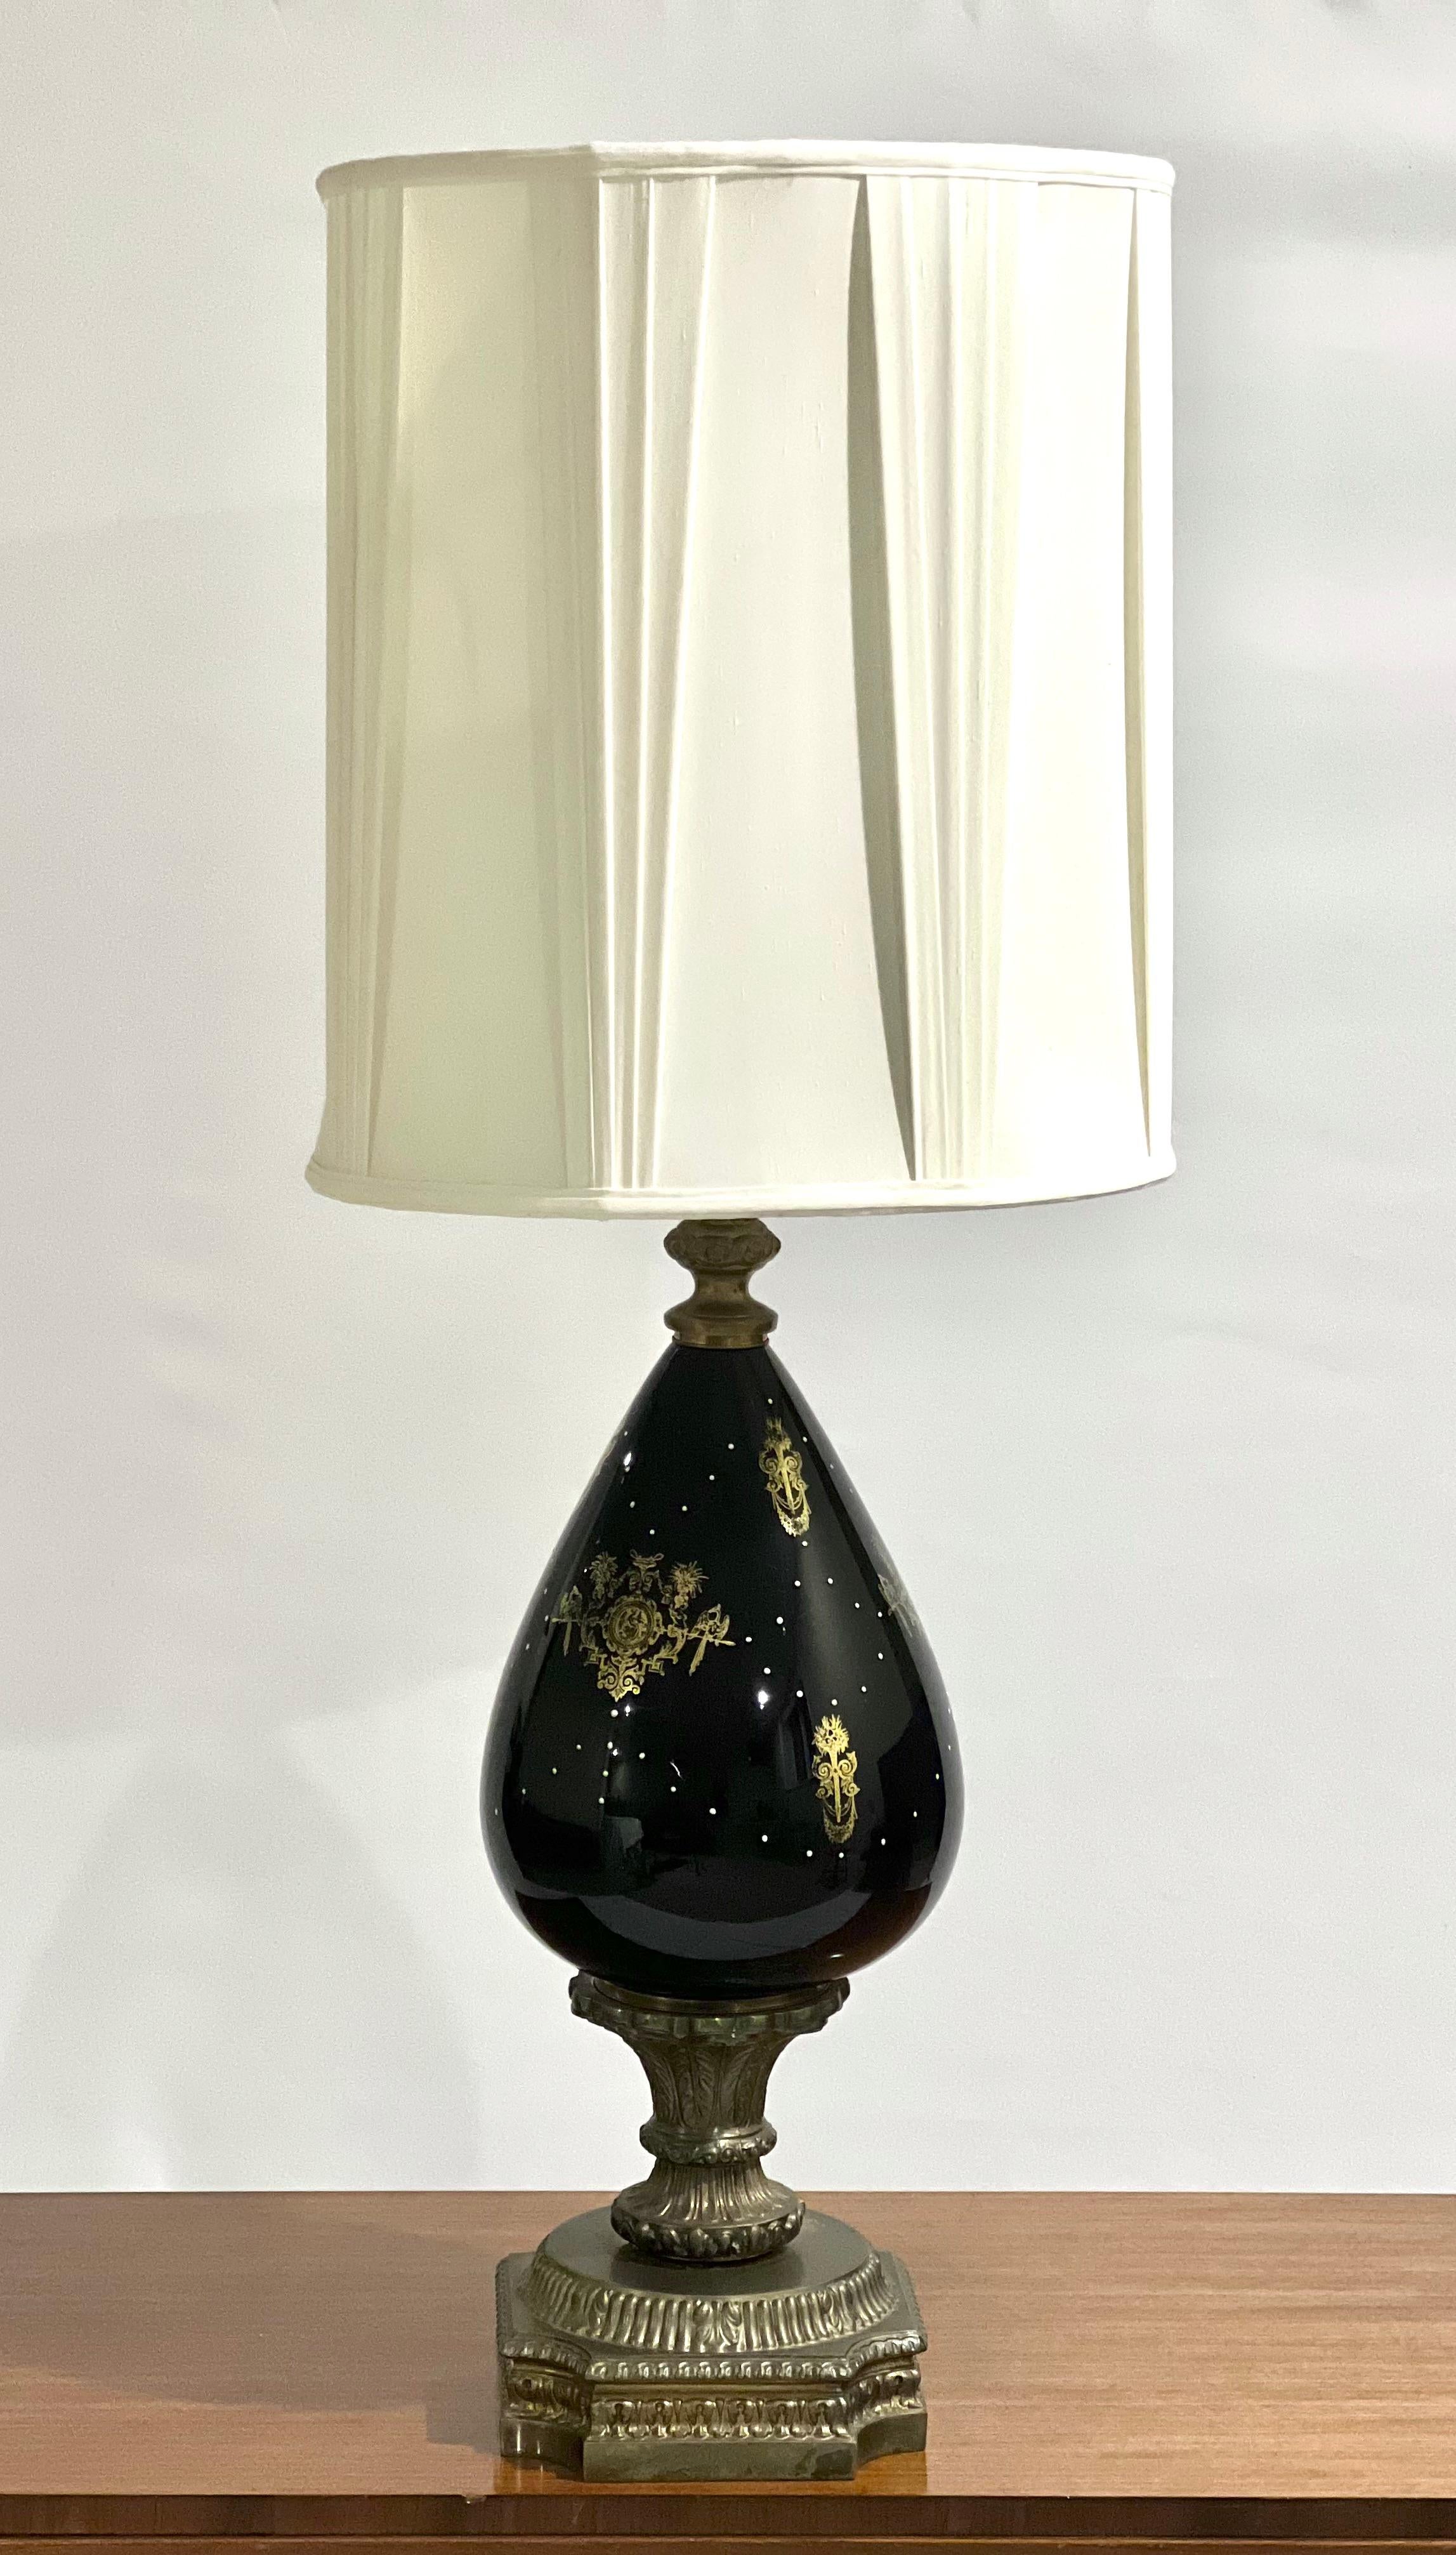 Lampe de table ancienne en porcelaine et laiton avec abat-jour, France vers 1890.

Impressionnante lampe vase en miroir noir avec une base en laiton doré ou en bronze doré et des détails de feuilles d'acanthe. Le corps présente des emblèmes